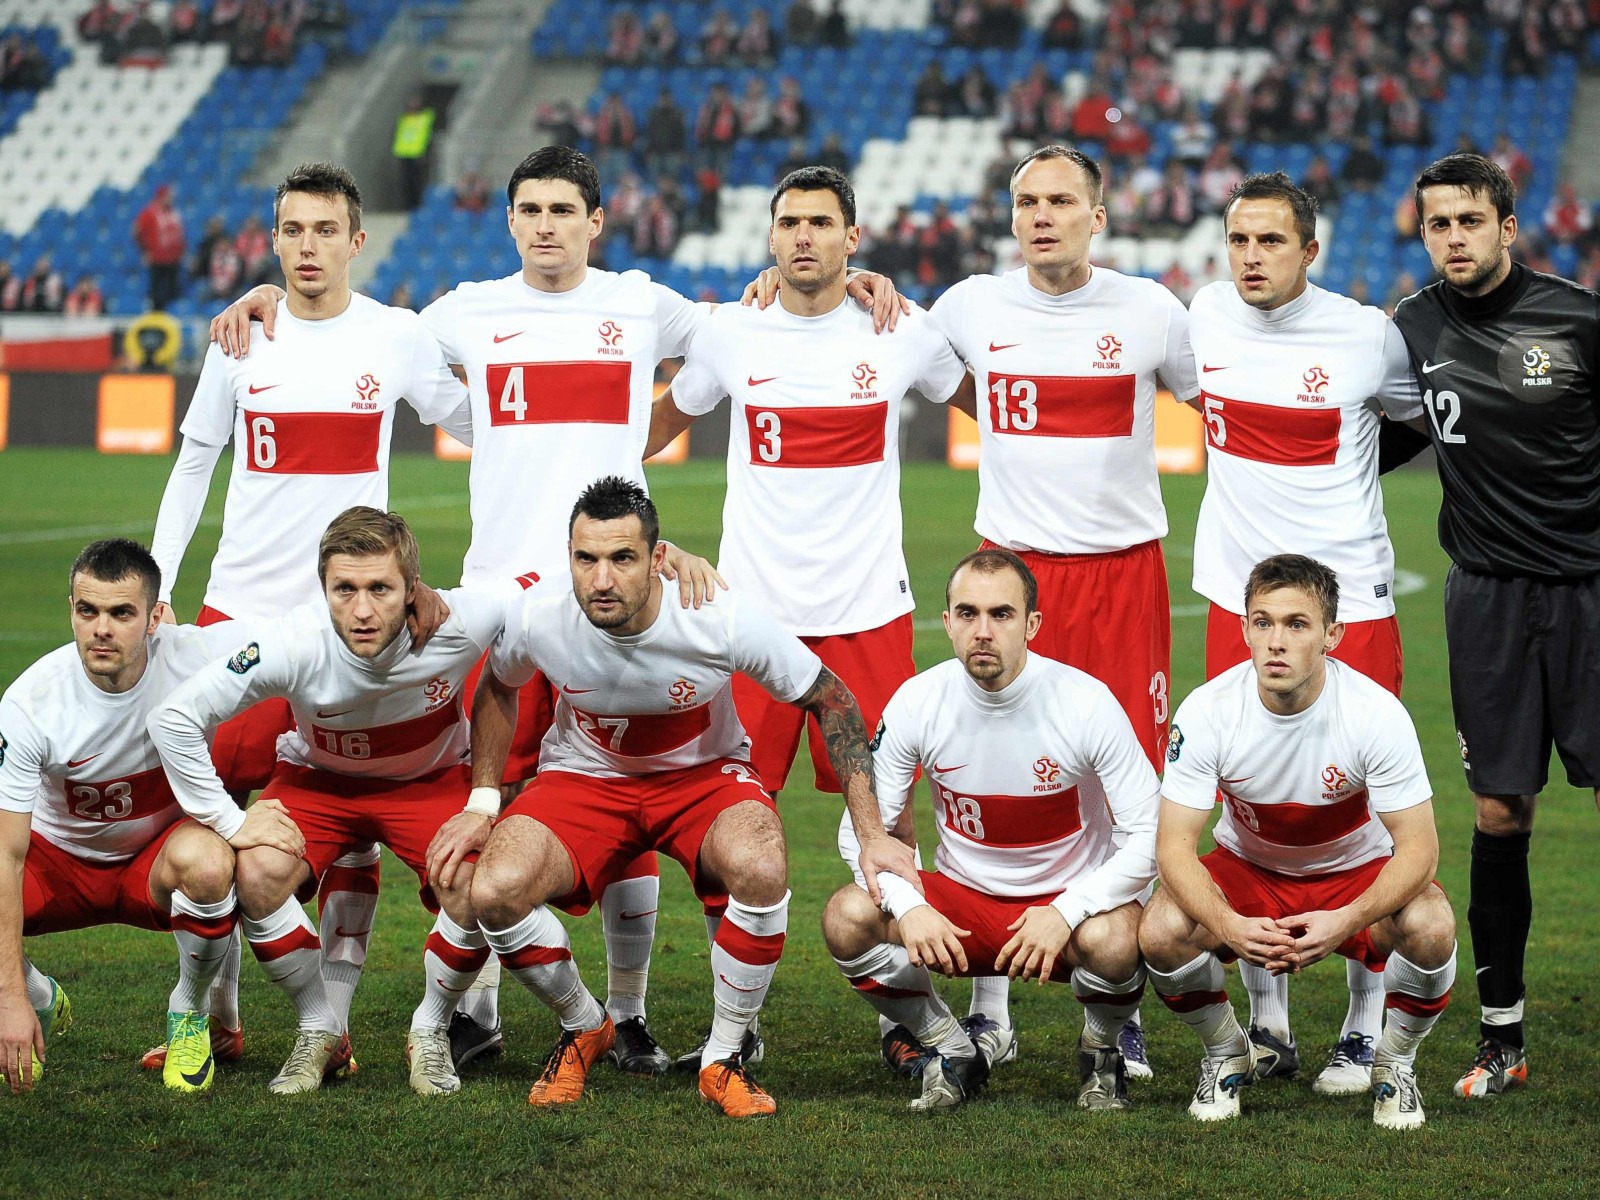 Polska National Team for 1600 x 1200 resolution